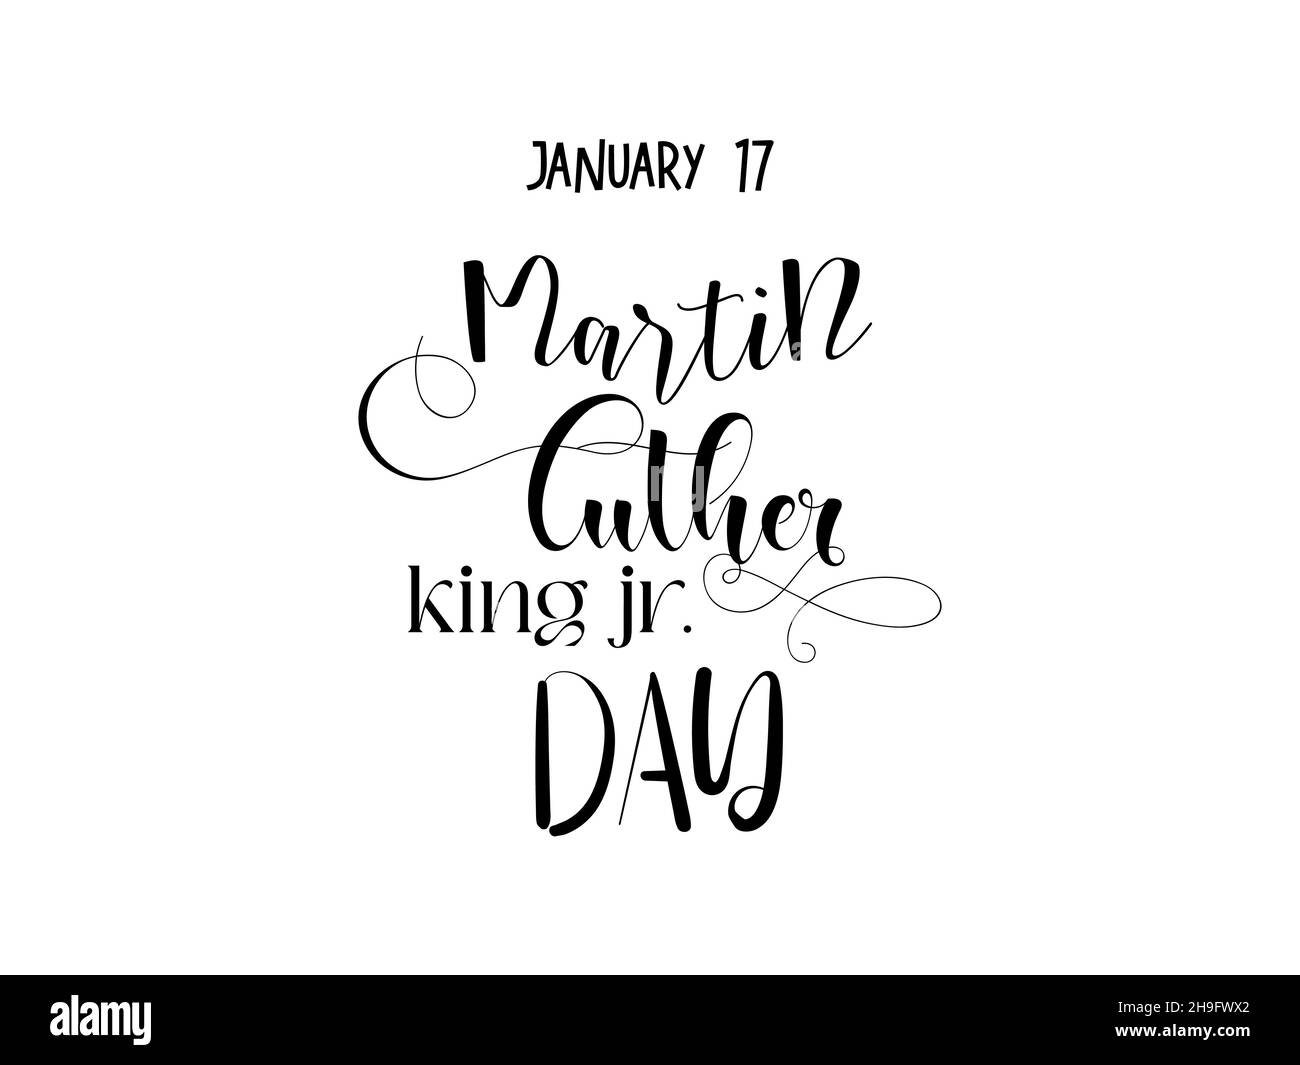 17 gennaio - MLK Day. Disegno di scrittura di mano di stile di Calligraphy per Martin Luther King Jr. Giorno. Illustrazione del vettore di consapevolezza per banner, poster, maglietta Illustrazione Vettoriale